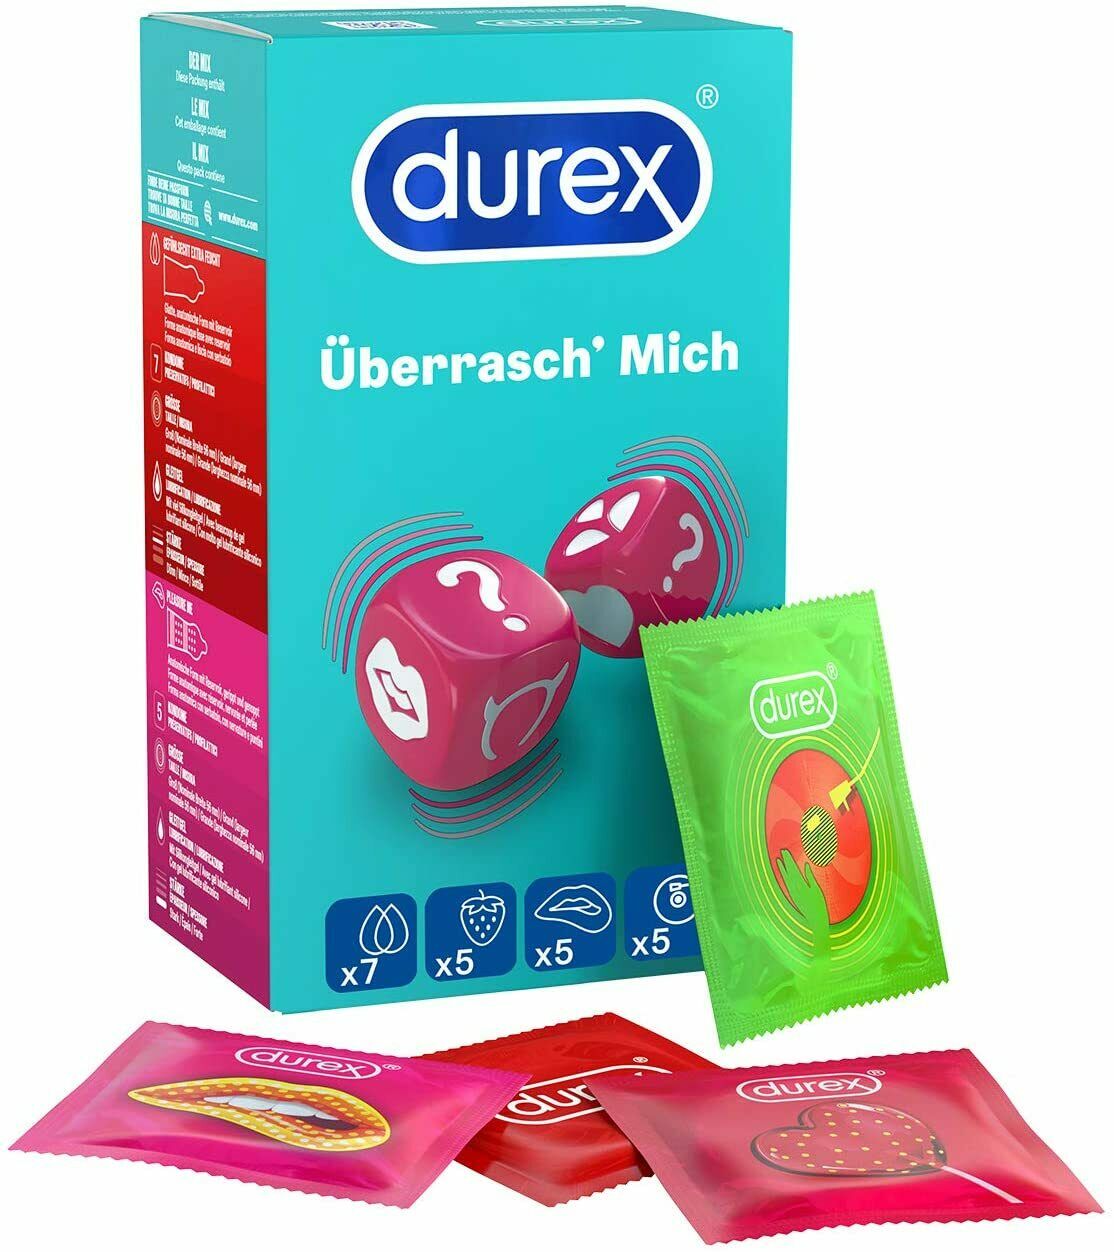 Durex Überrasch Mich Kondome Mix Mit Noppen Rippen And Geschmack 22 Stück Für 1199€ Inkl 